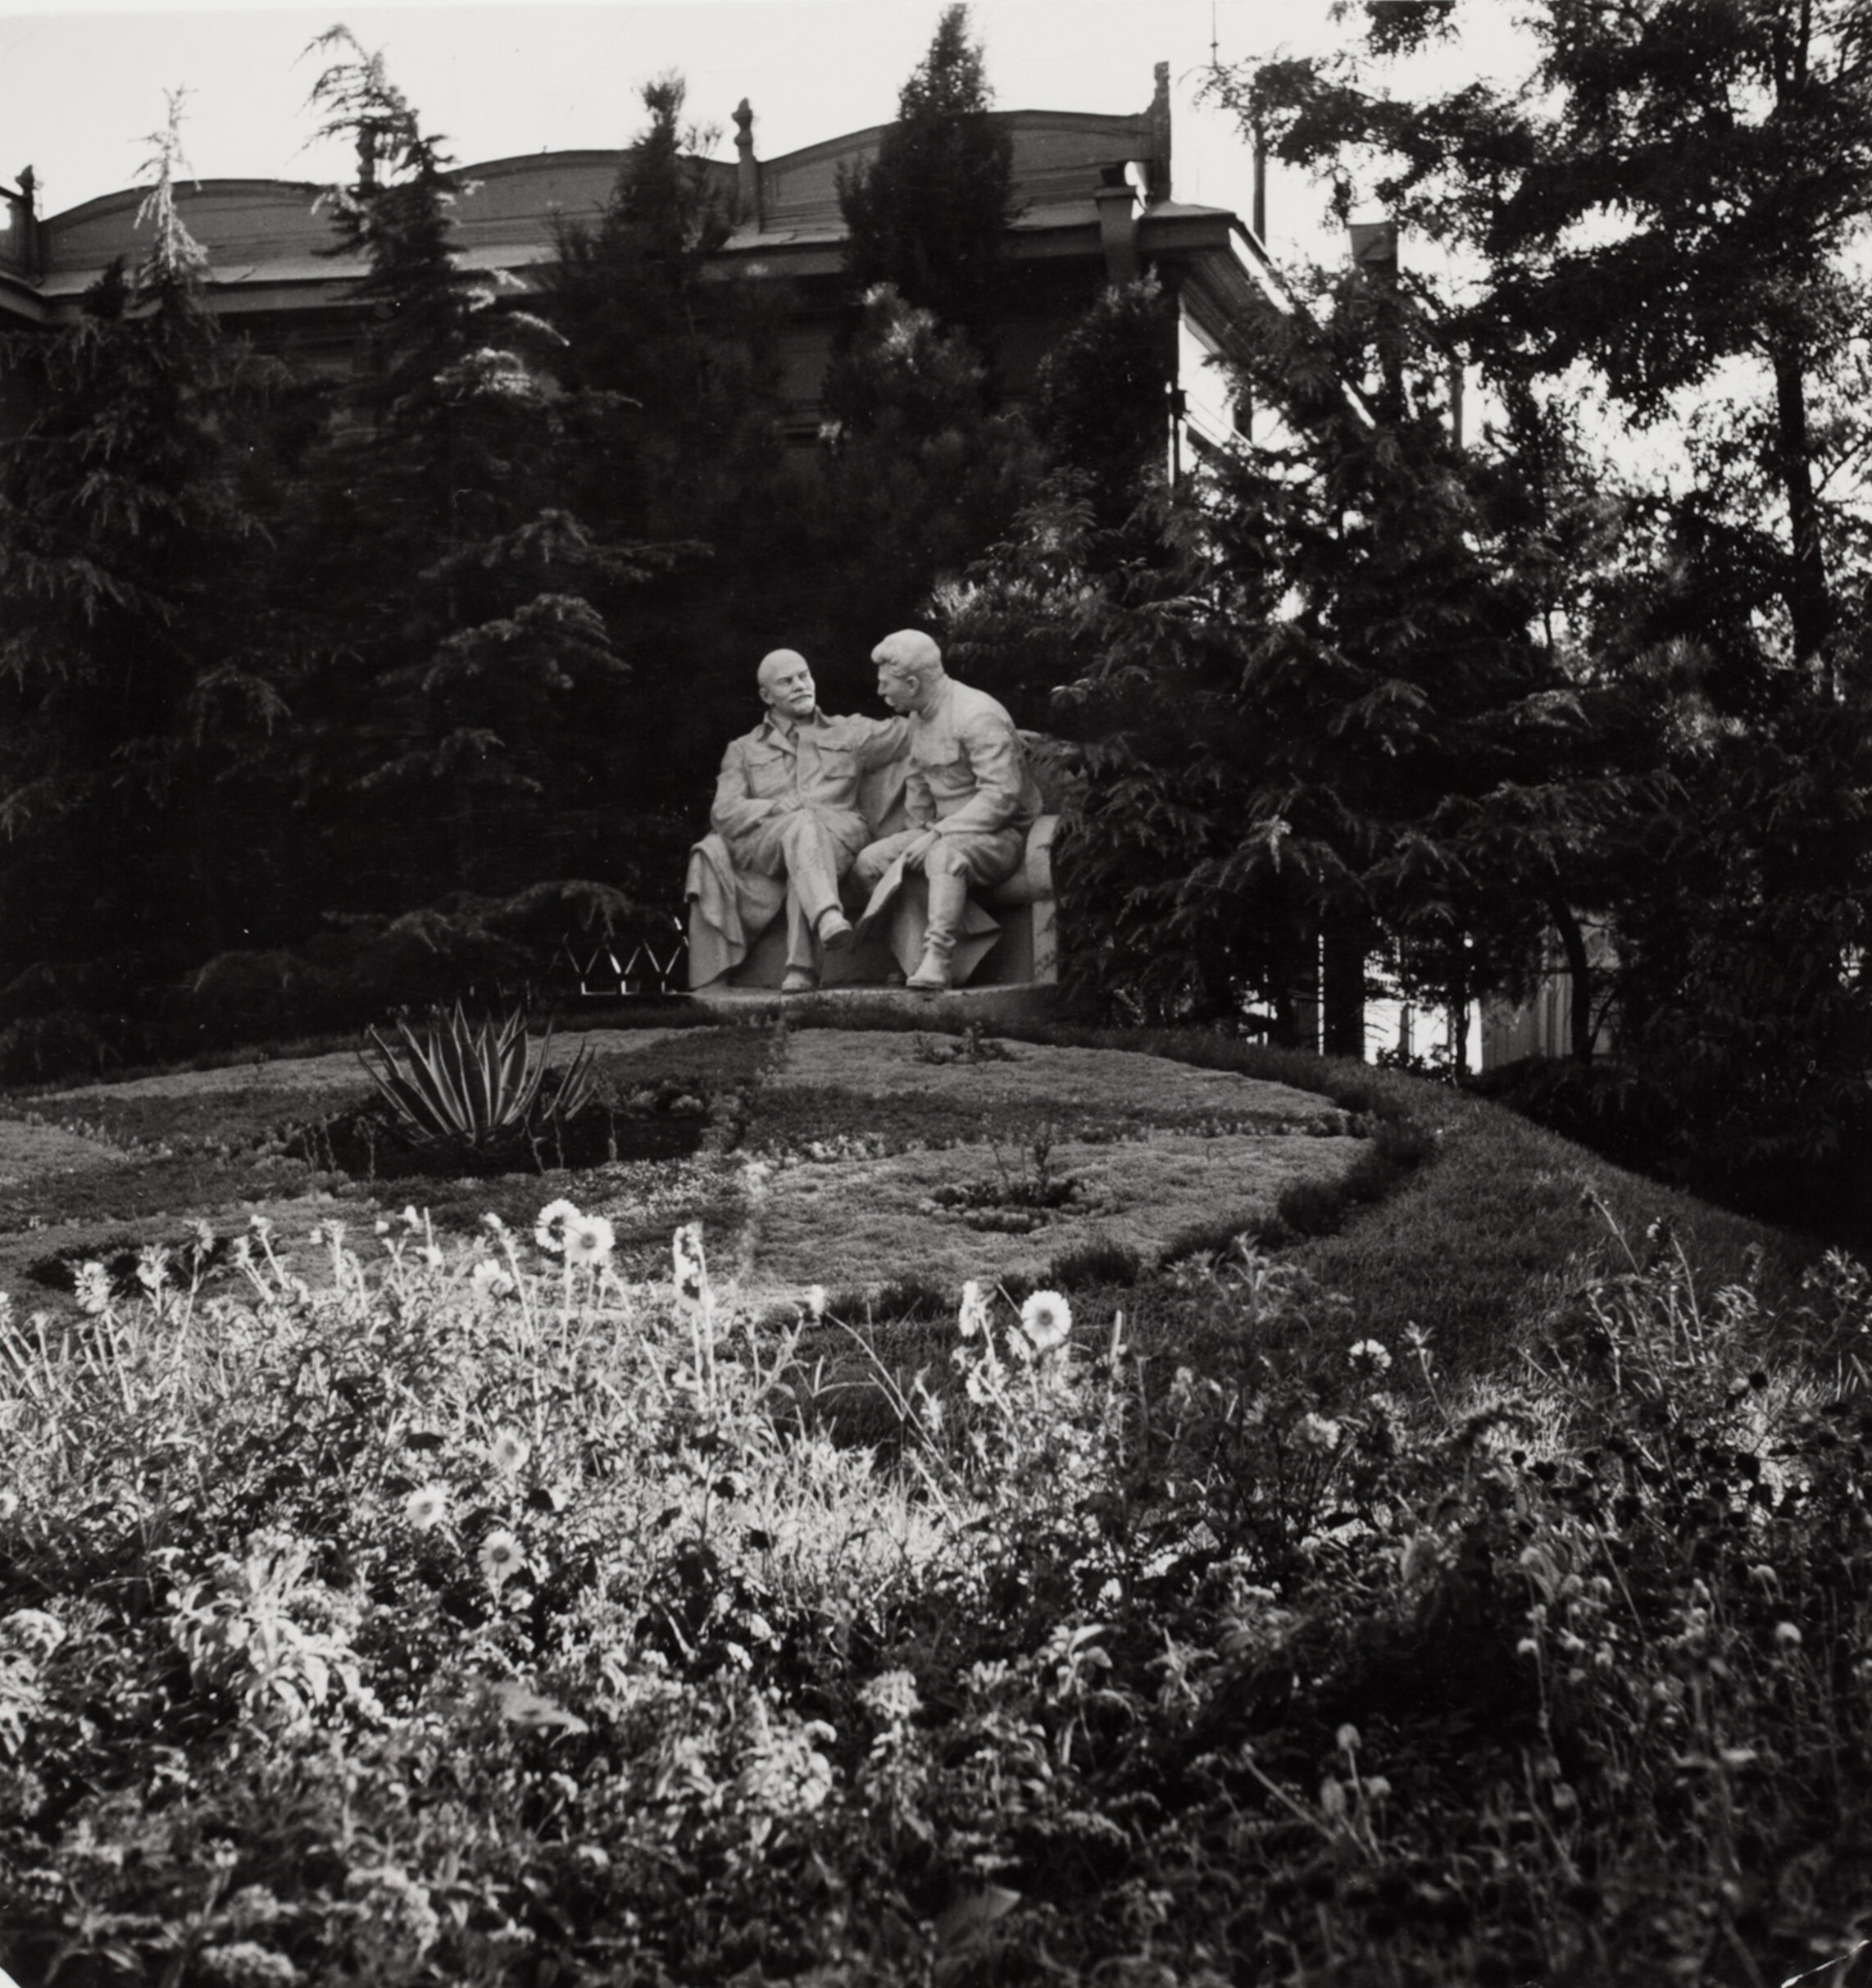 Статуя Иосифа Сталина и Владимира Ленина в парке, Москва, 1947 год. Фотограф Роберт Капа